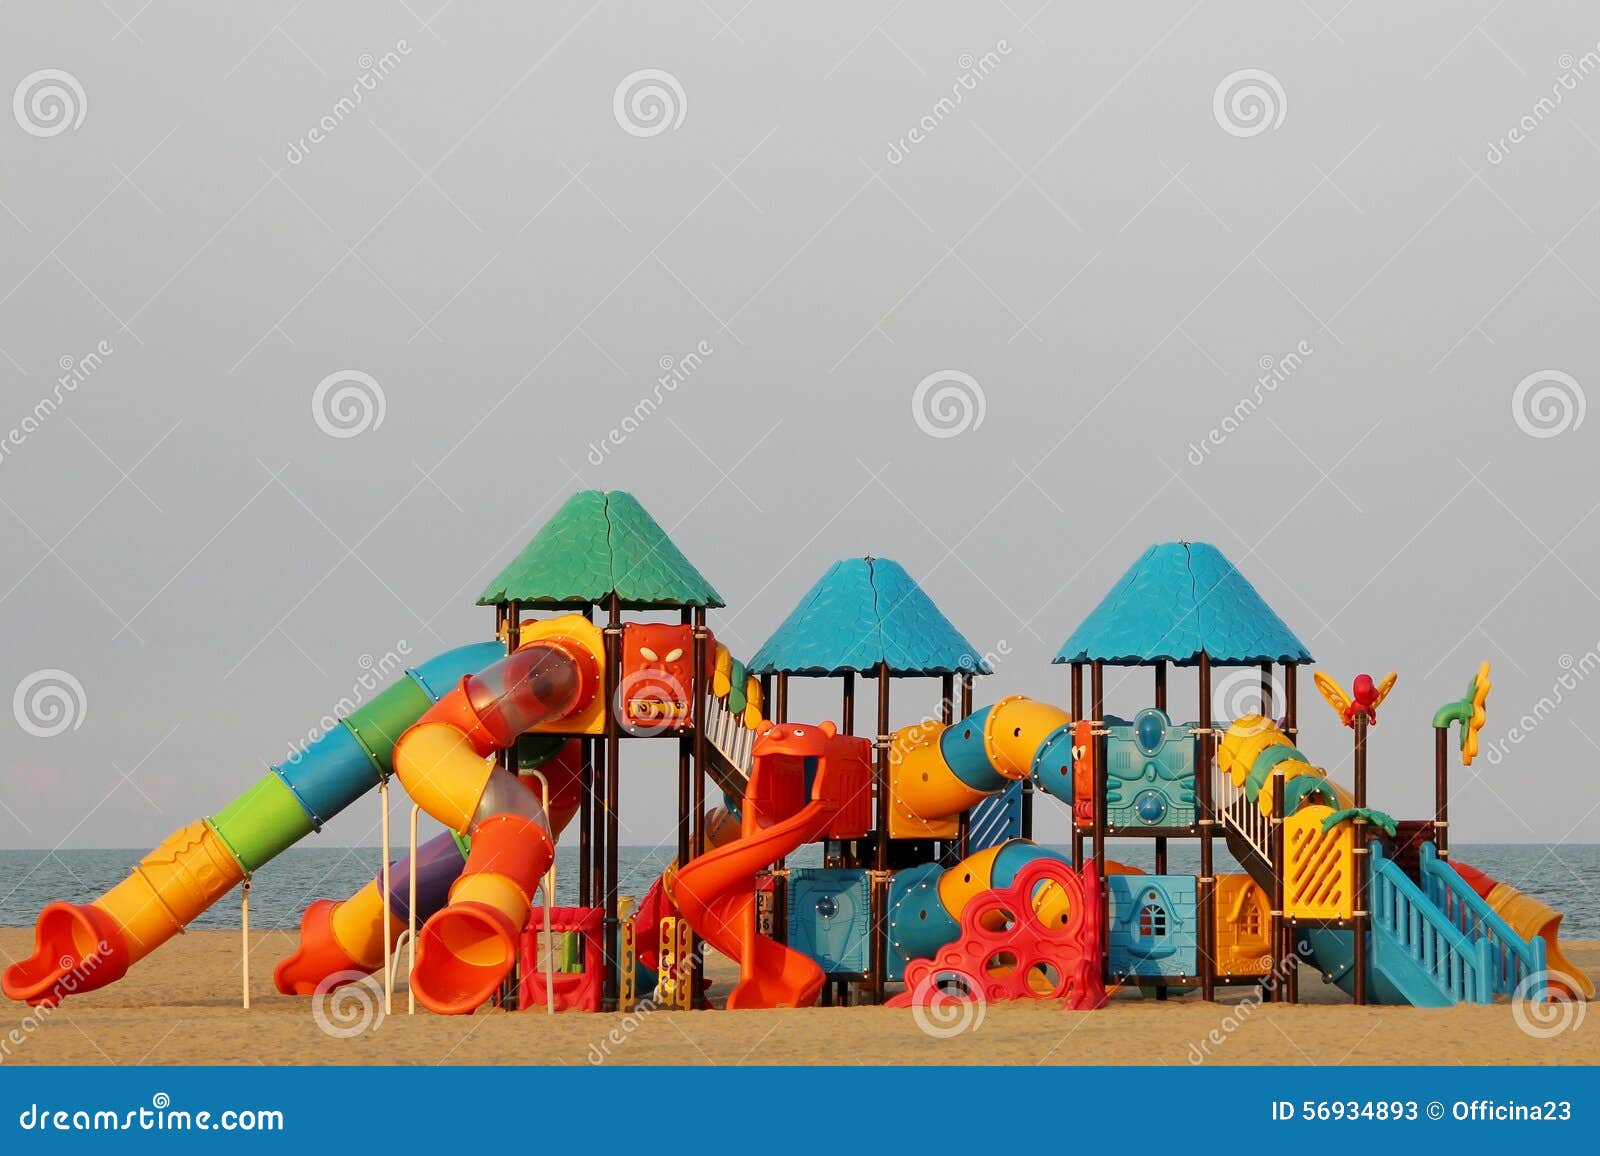 children playground on beach